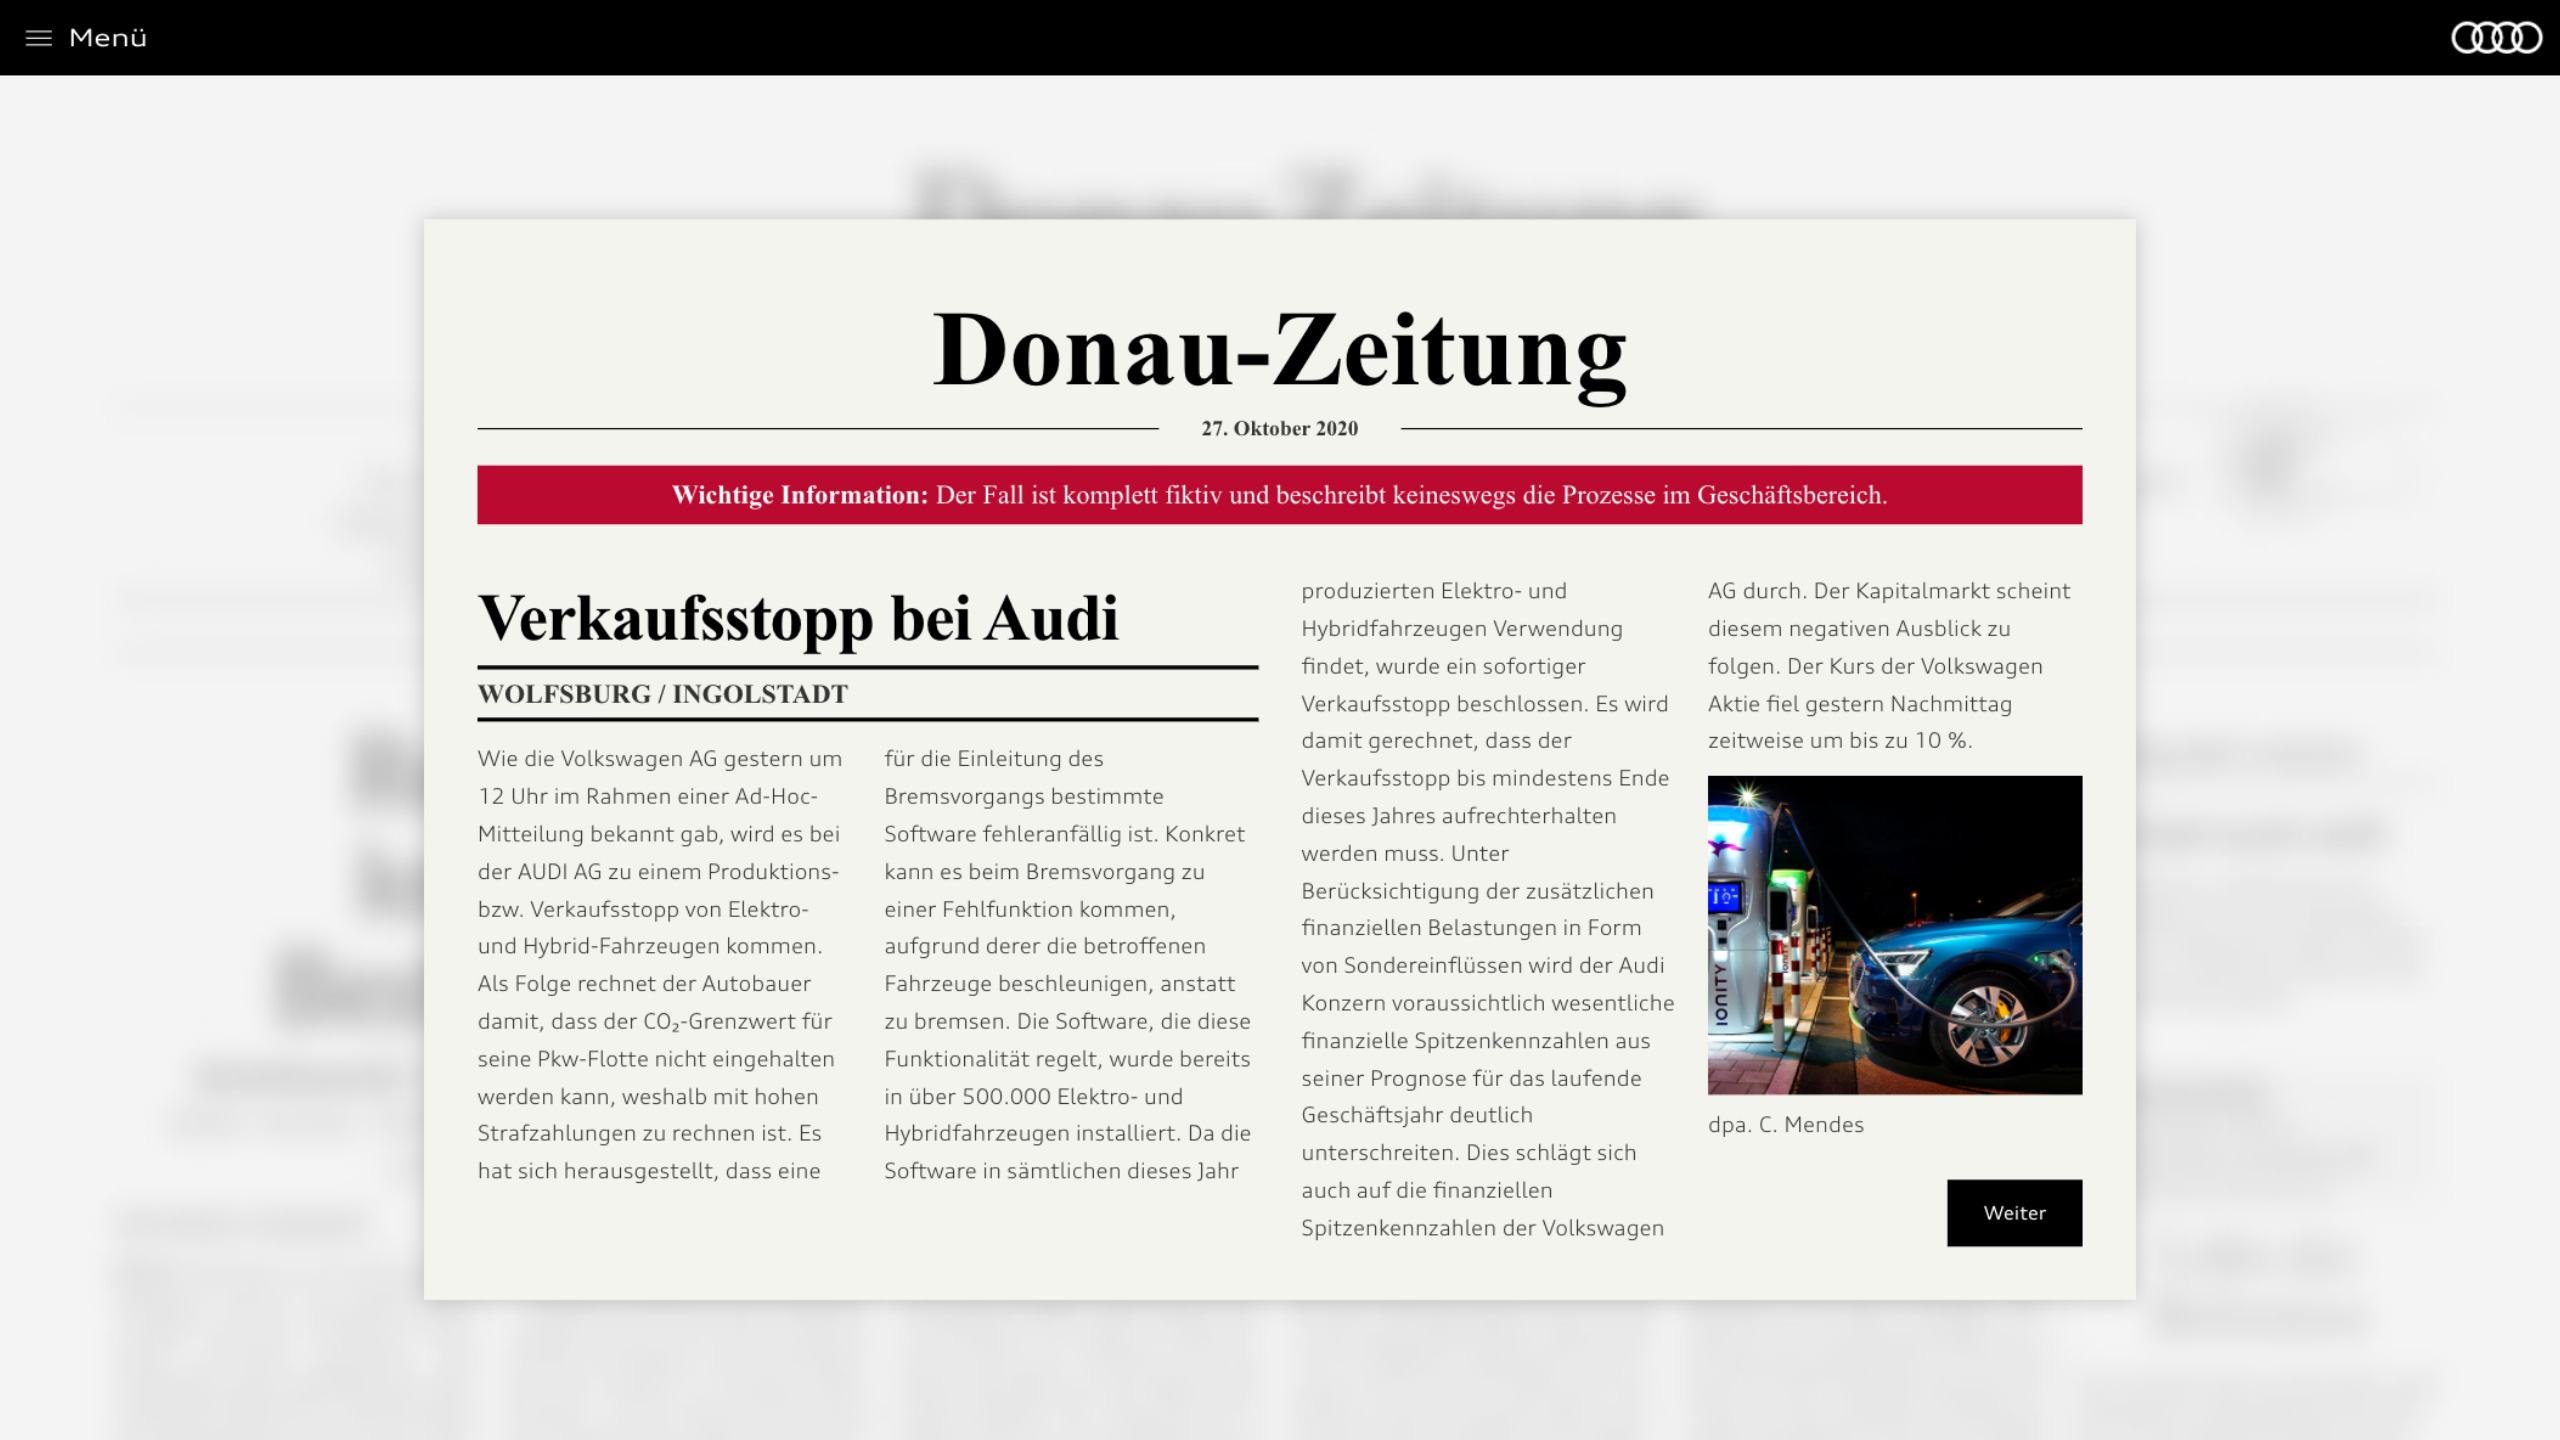 Lernszenario im Audi Online-Training über Insiderrecht